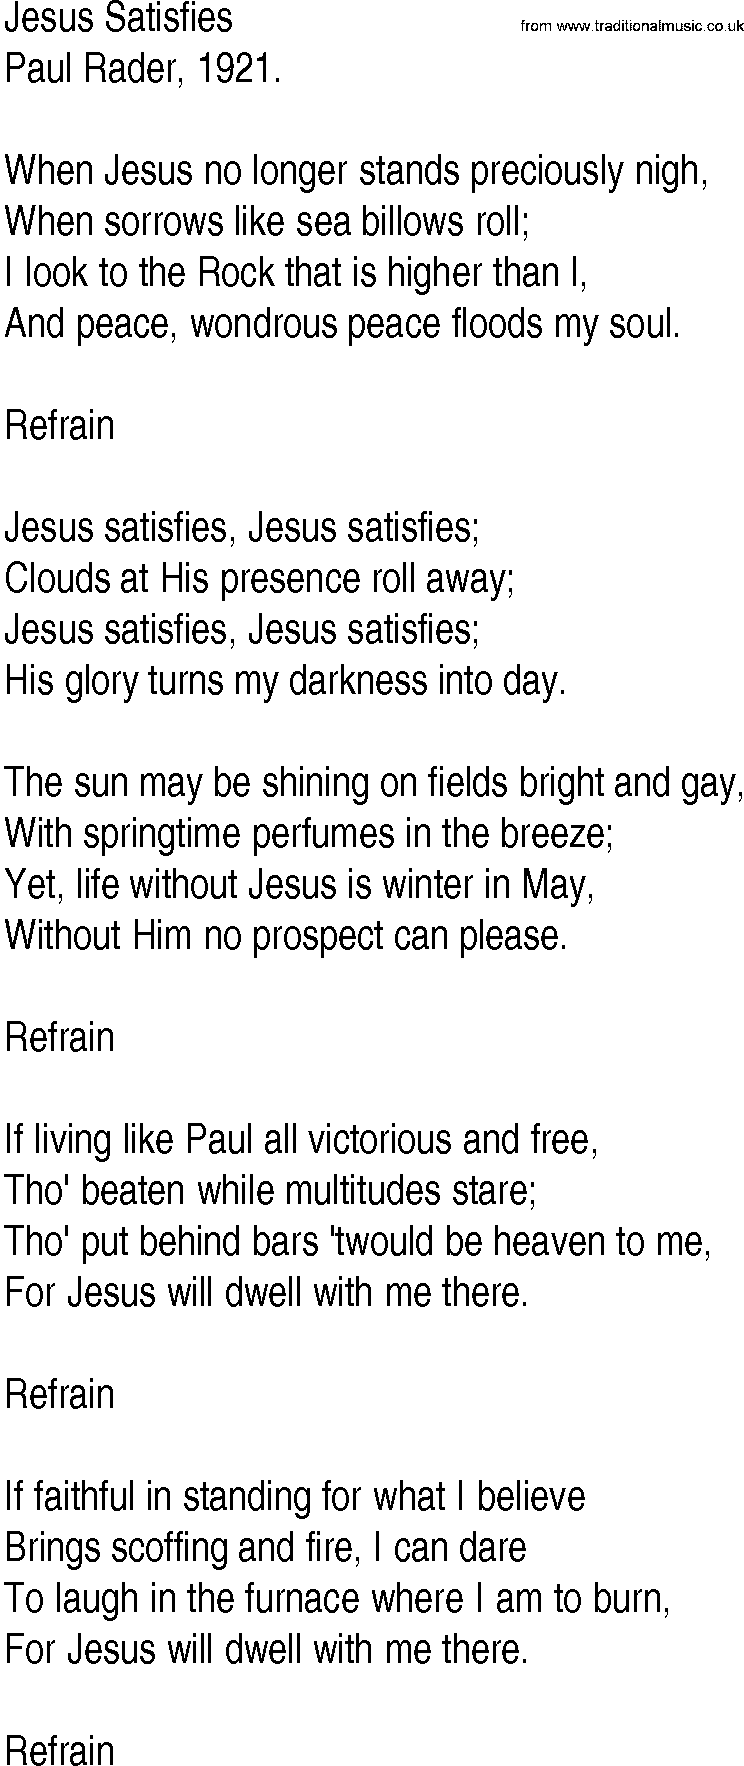 Hymn and Gospel Song: Jesus Satisfies by Paul Rader lyrics